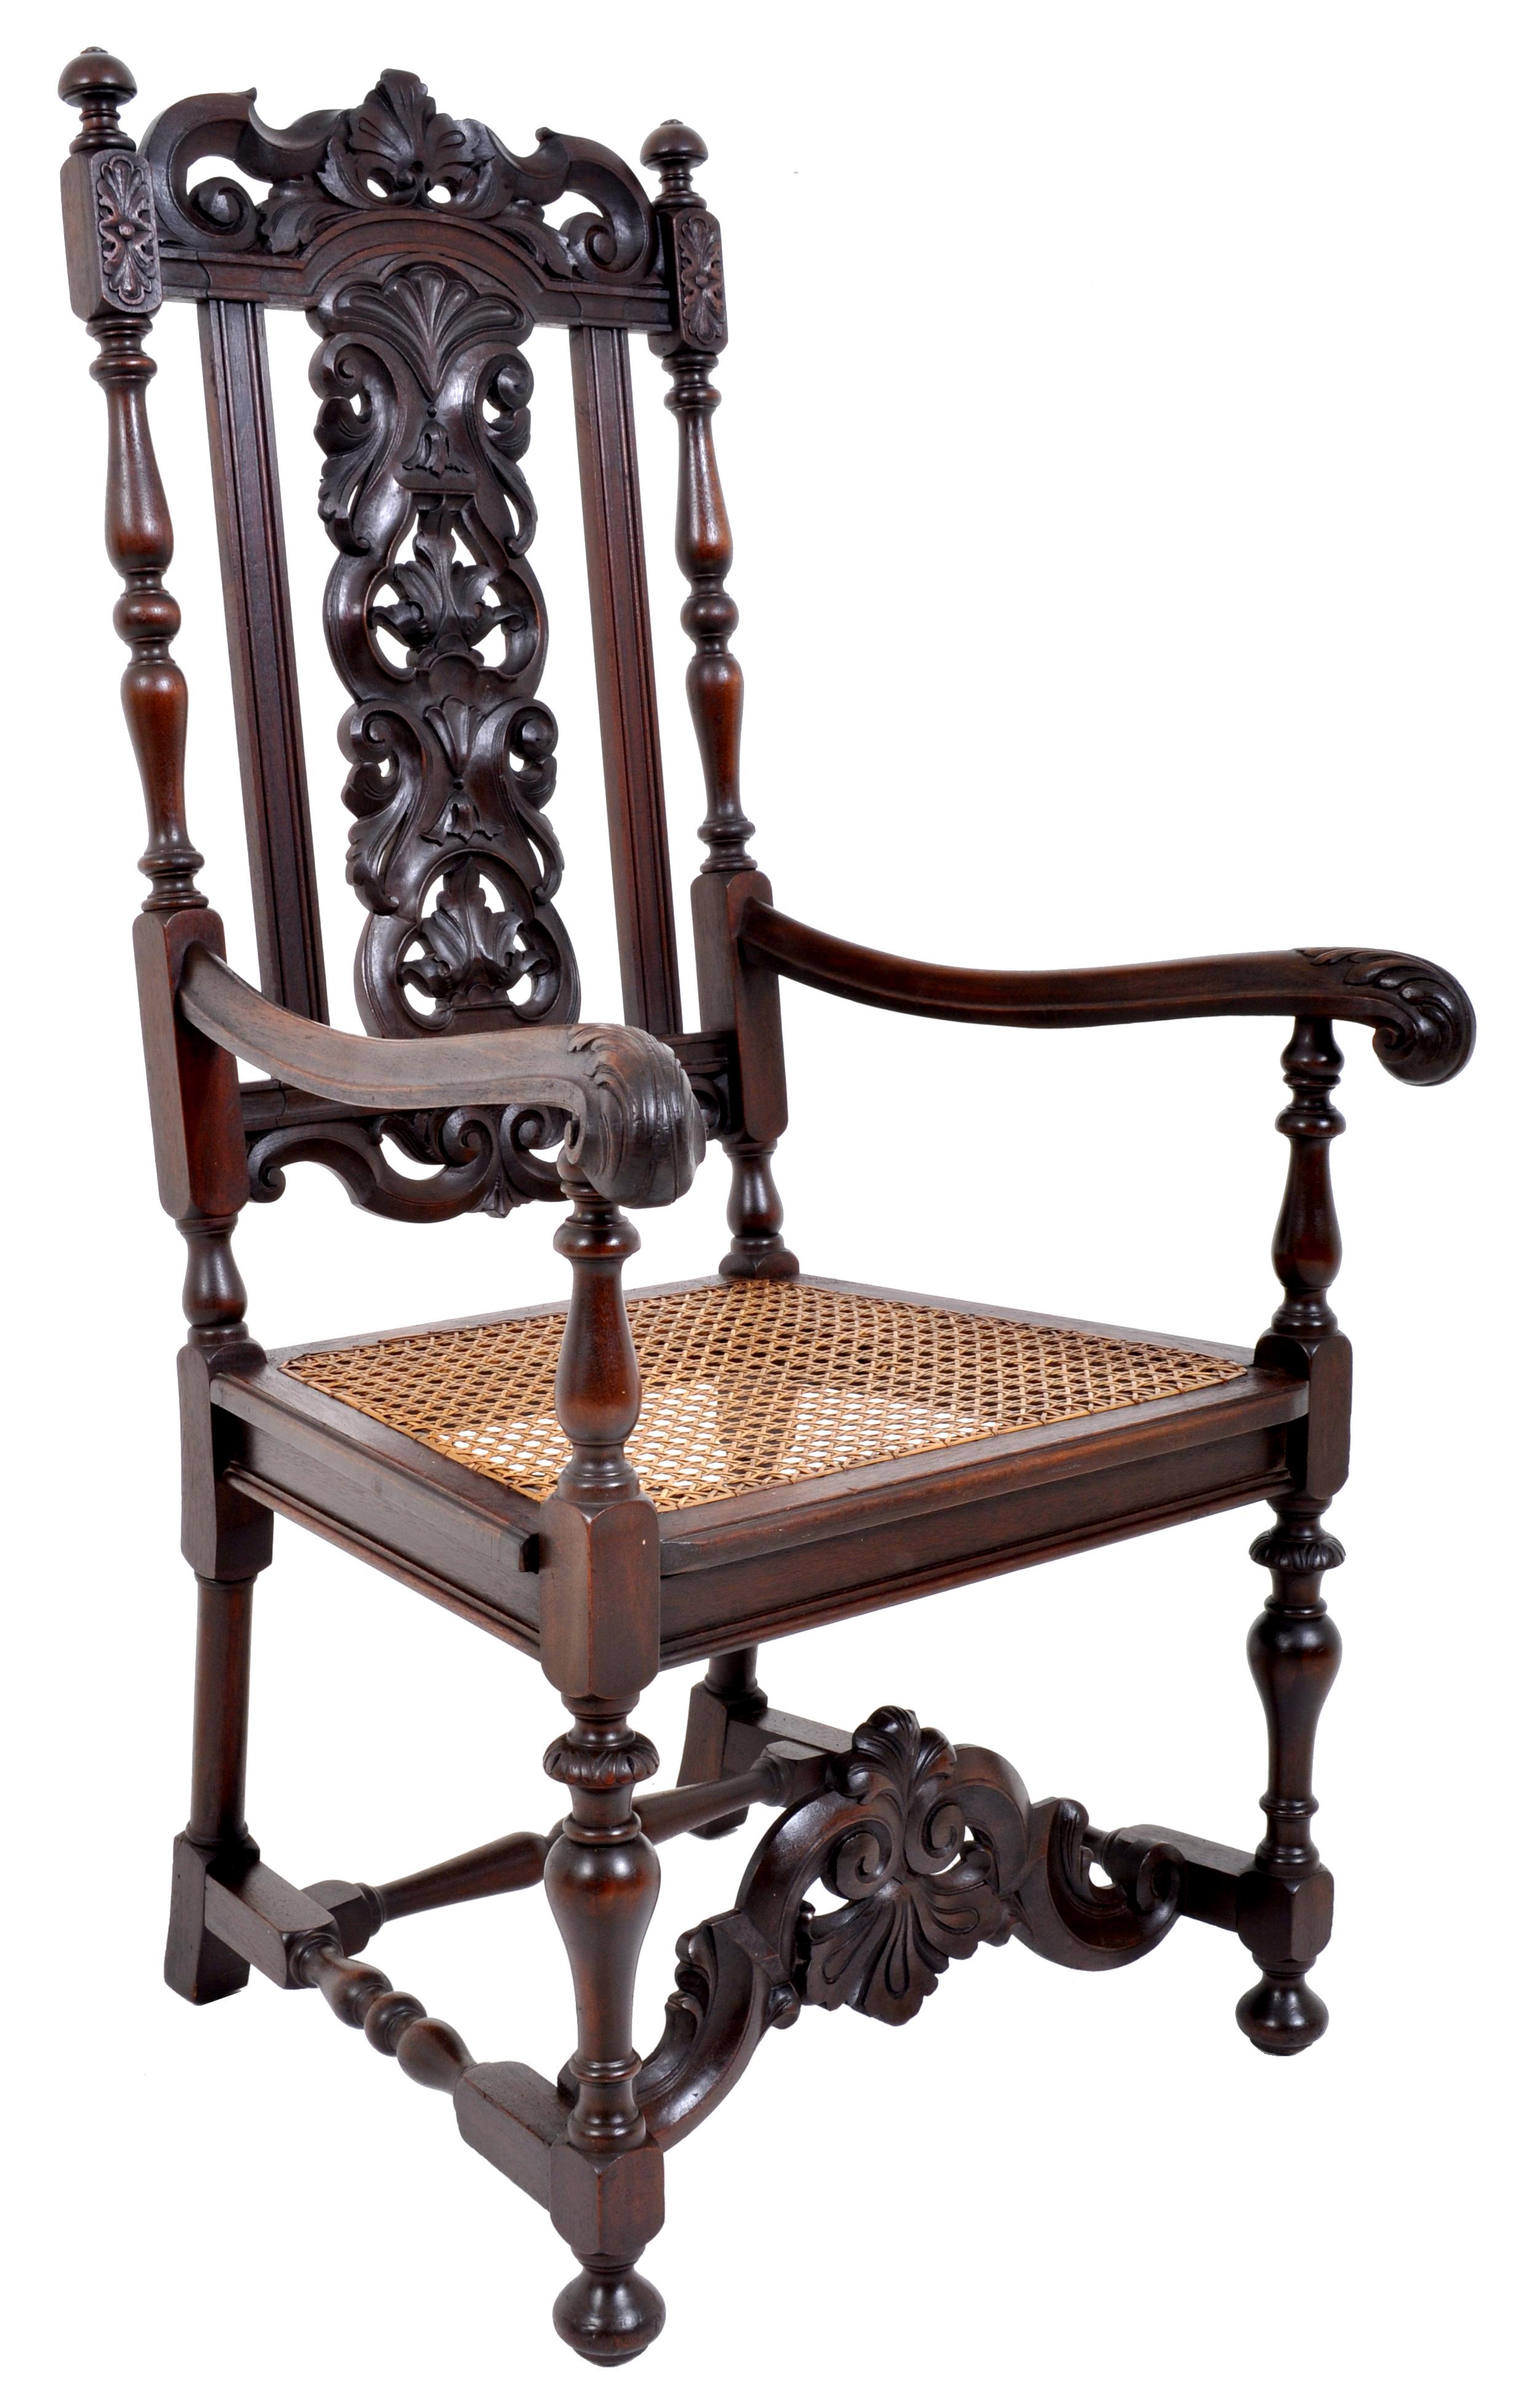 Chaise trône baroque ancienne en noyer sculpté, vers 1880. La chaise a une crête sculptée avec un motif de coquille au centre, flanquée d'une paire de fleurons, la plaque centrale noire fortement et profondément sculptée de feuilles d'acanthe et